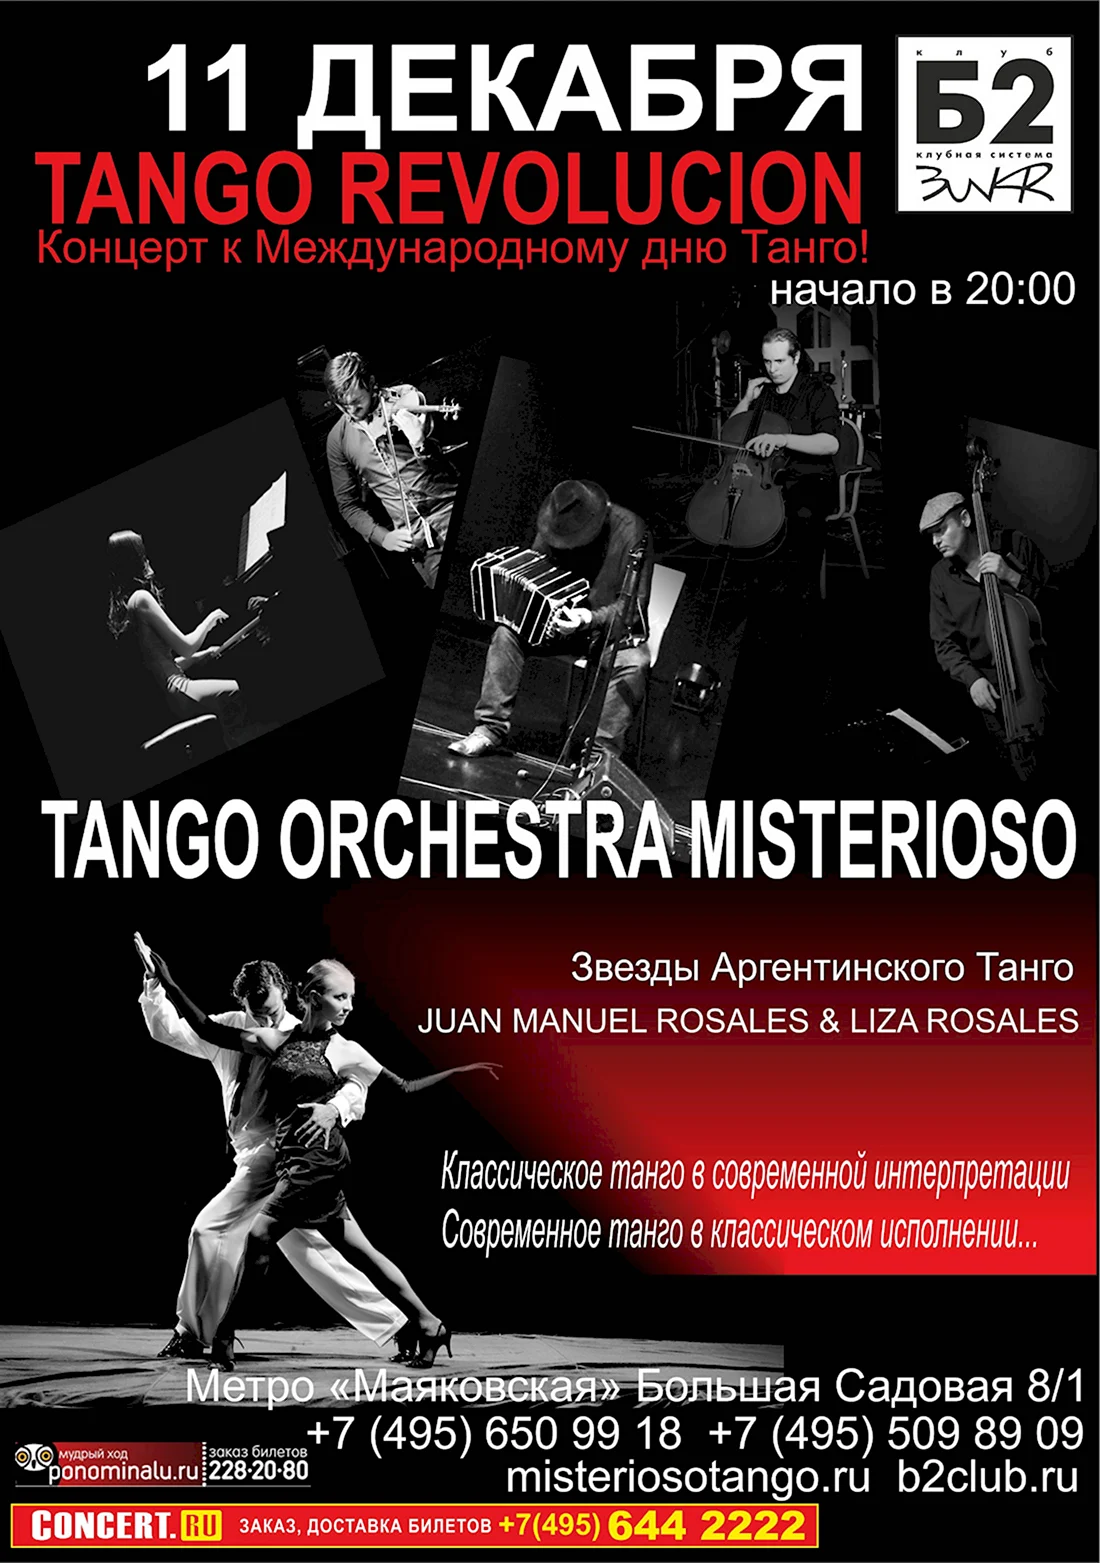 Название концерта к Международному Дню танго. Поздравление на праздник